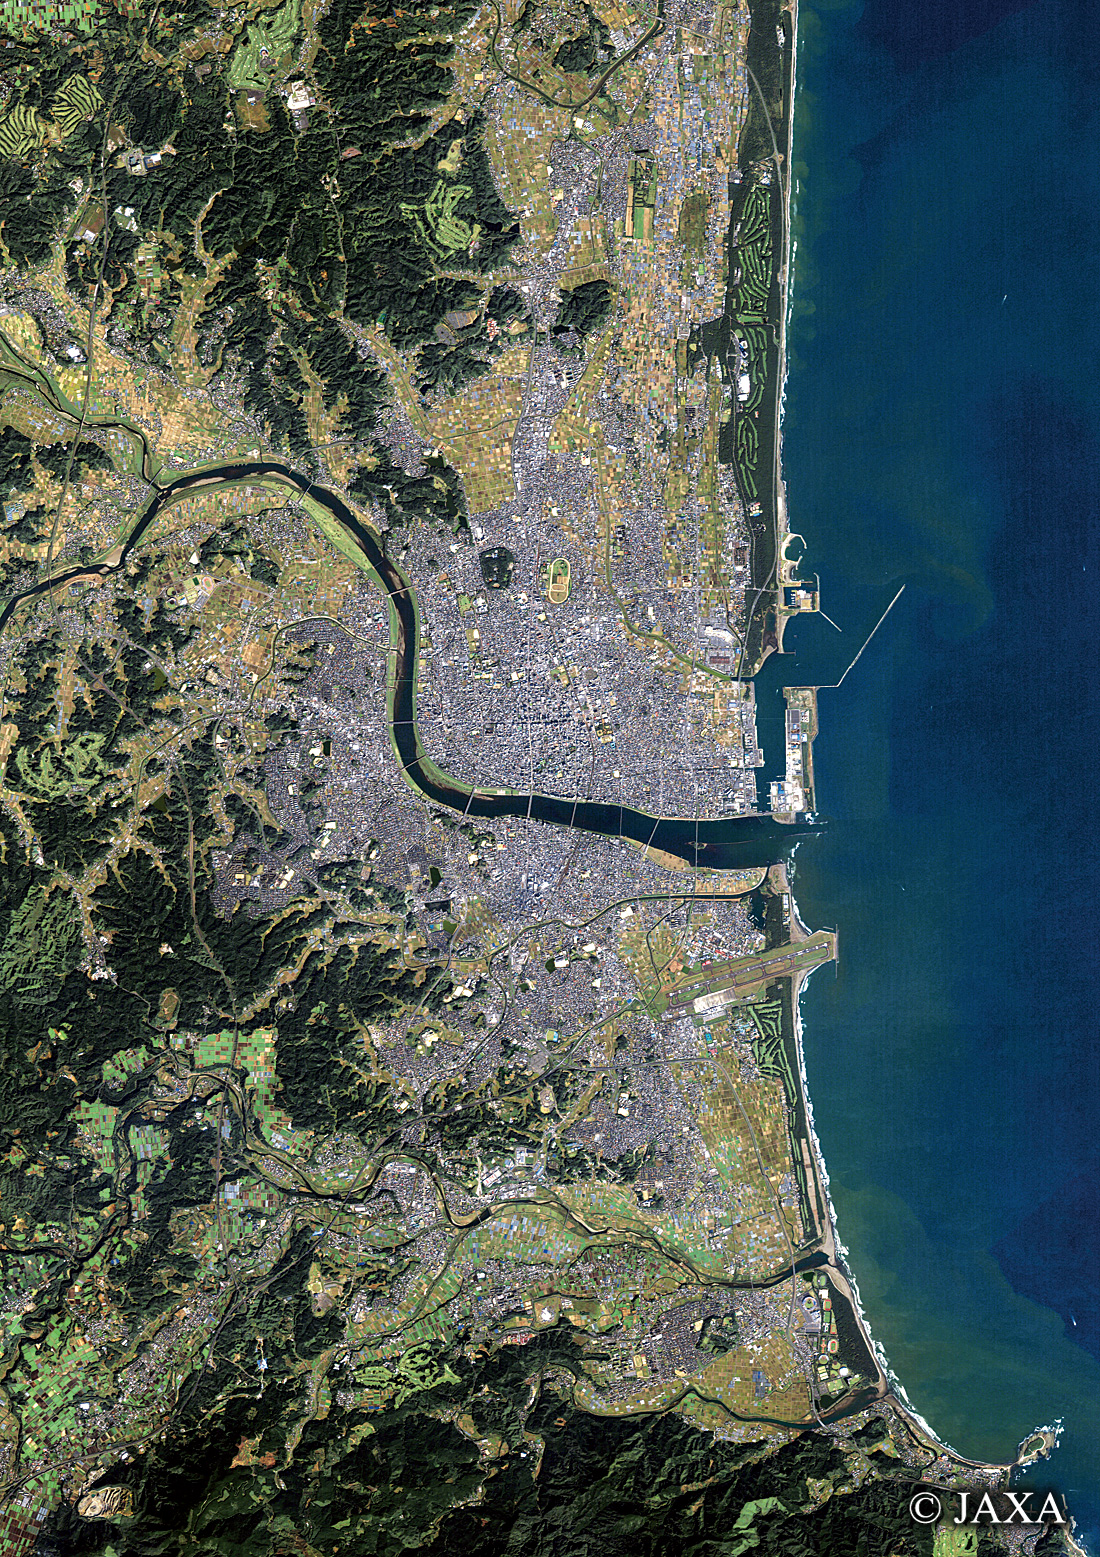 だいちから見た日本の都市 宮崎市:衛星画像